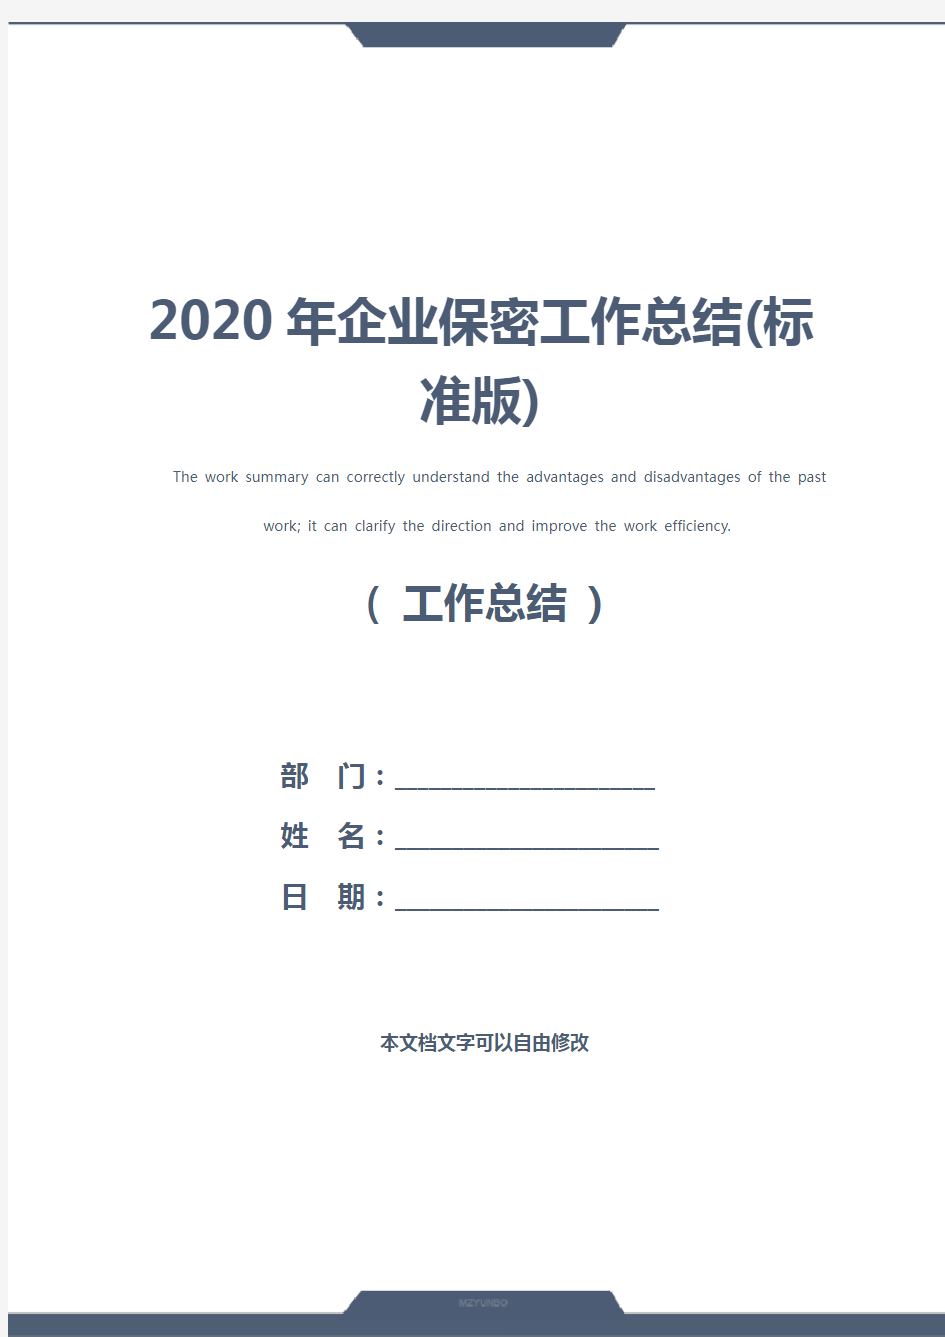 2020年企业保密工作总结(标准版)